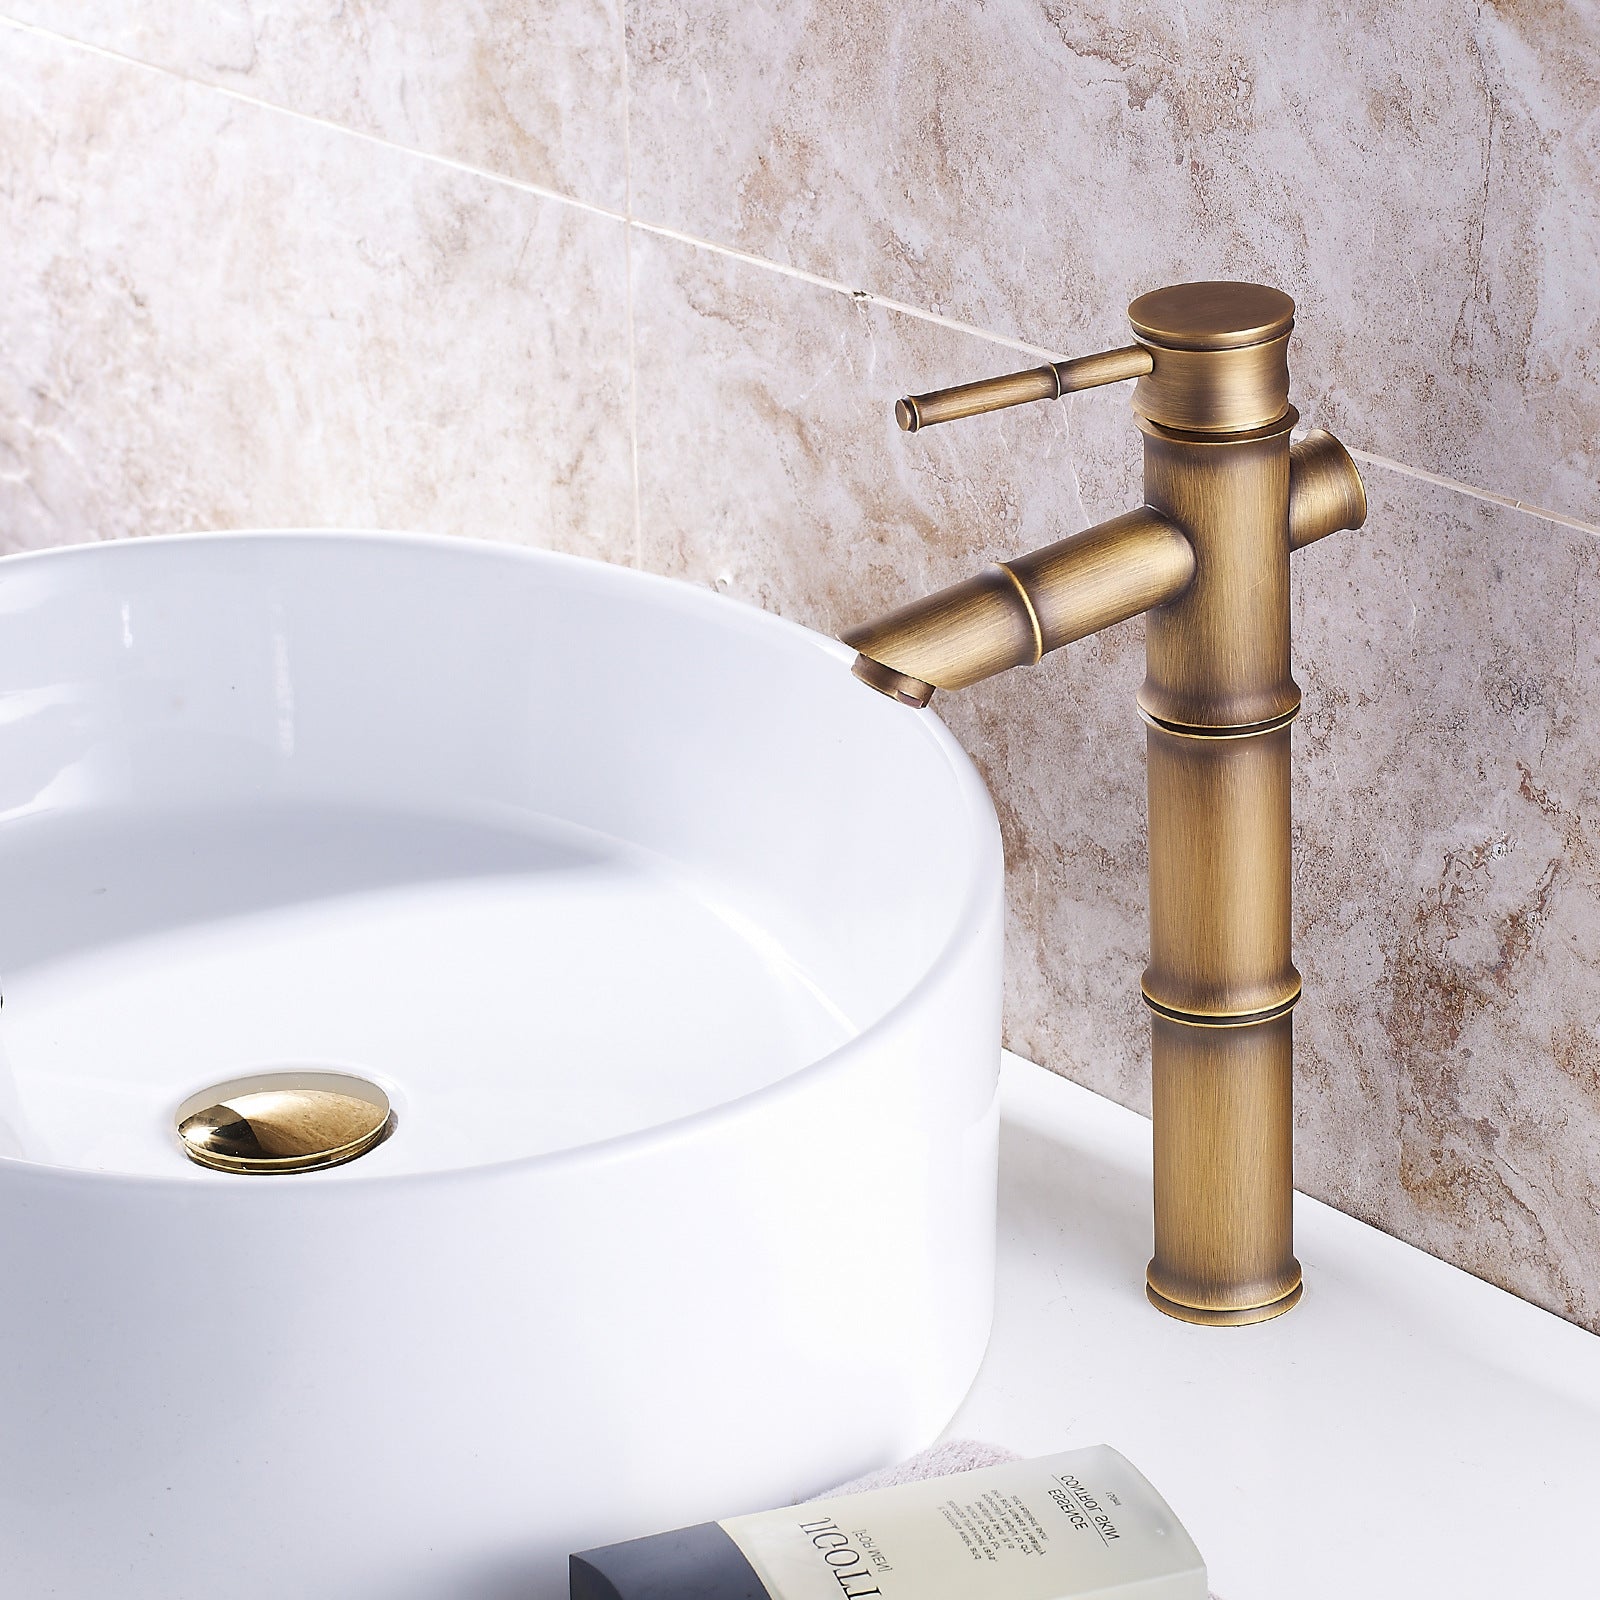 Homelody Luxuriös Retro Hohe Wasserhahn Bad Einhebel Mischbatterie Waschbeckenarmatur für Badzimmer